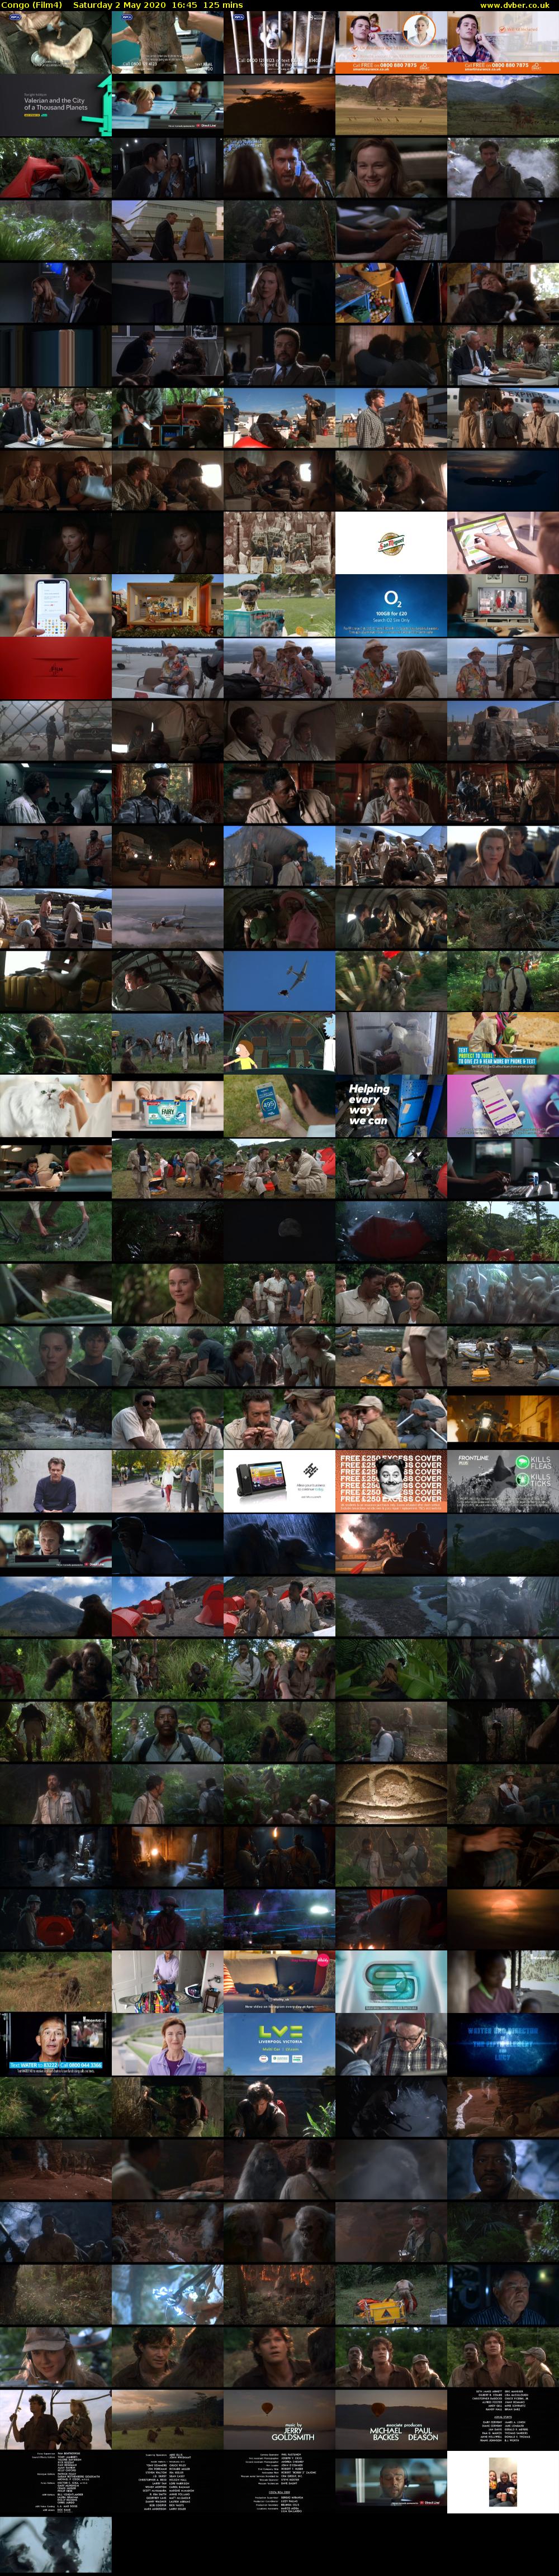 Congo (Film4) Saturday 2 May 2020 16:45 - 18:50